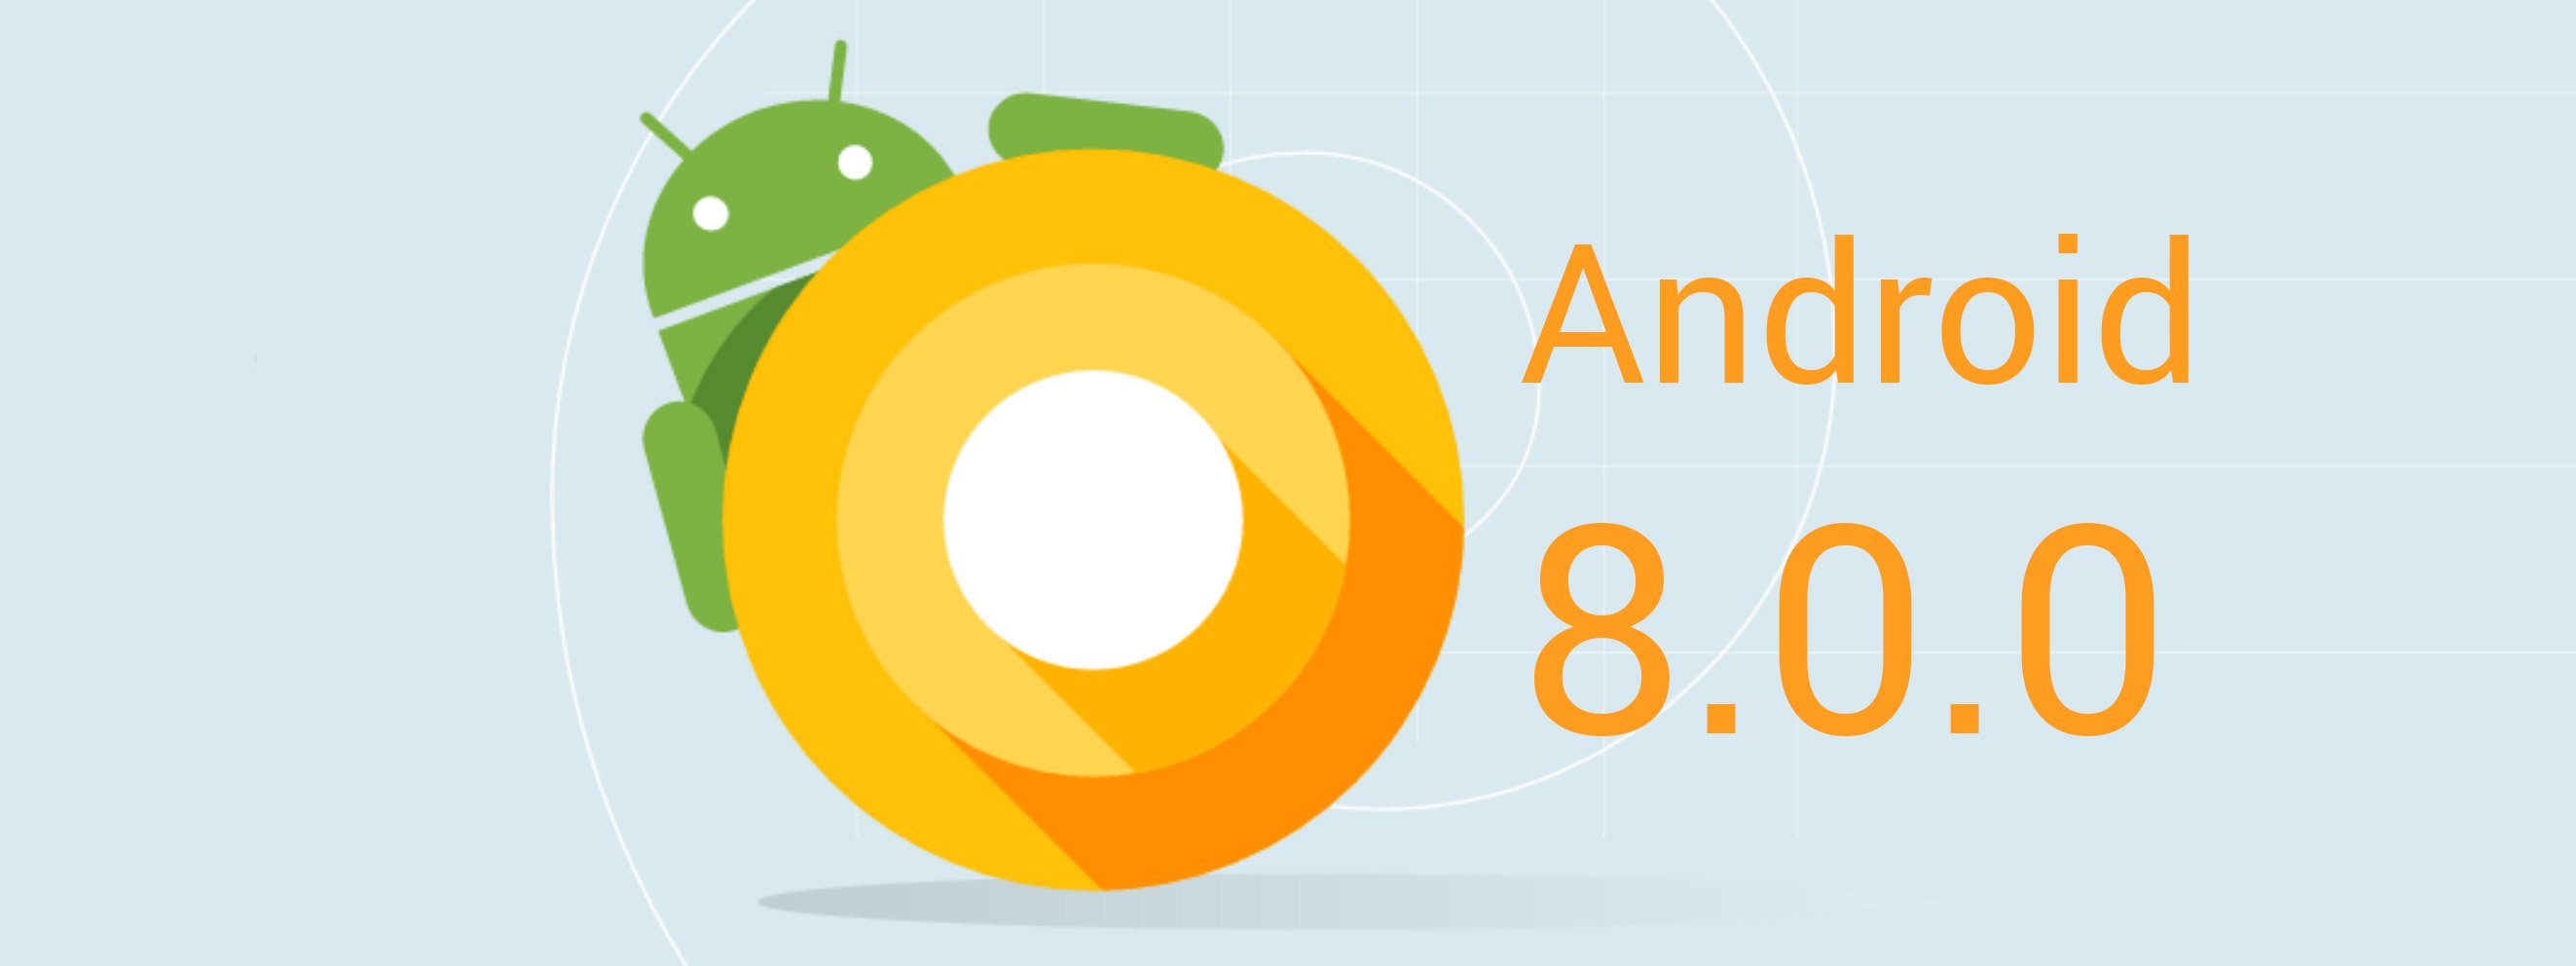 Android O chính thức mang số hiệu 8.0 nhưng vẫn chưa có tên